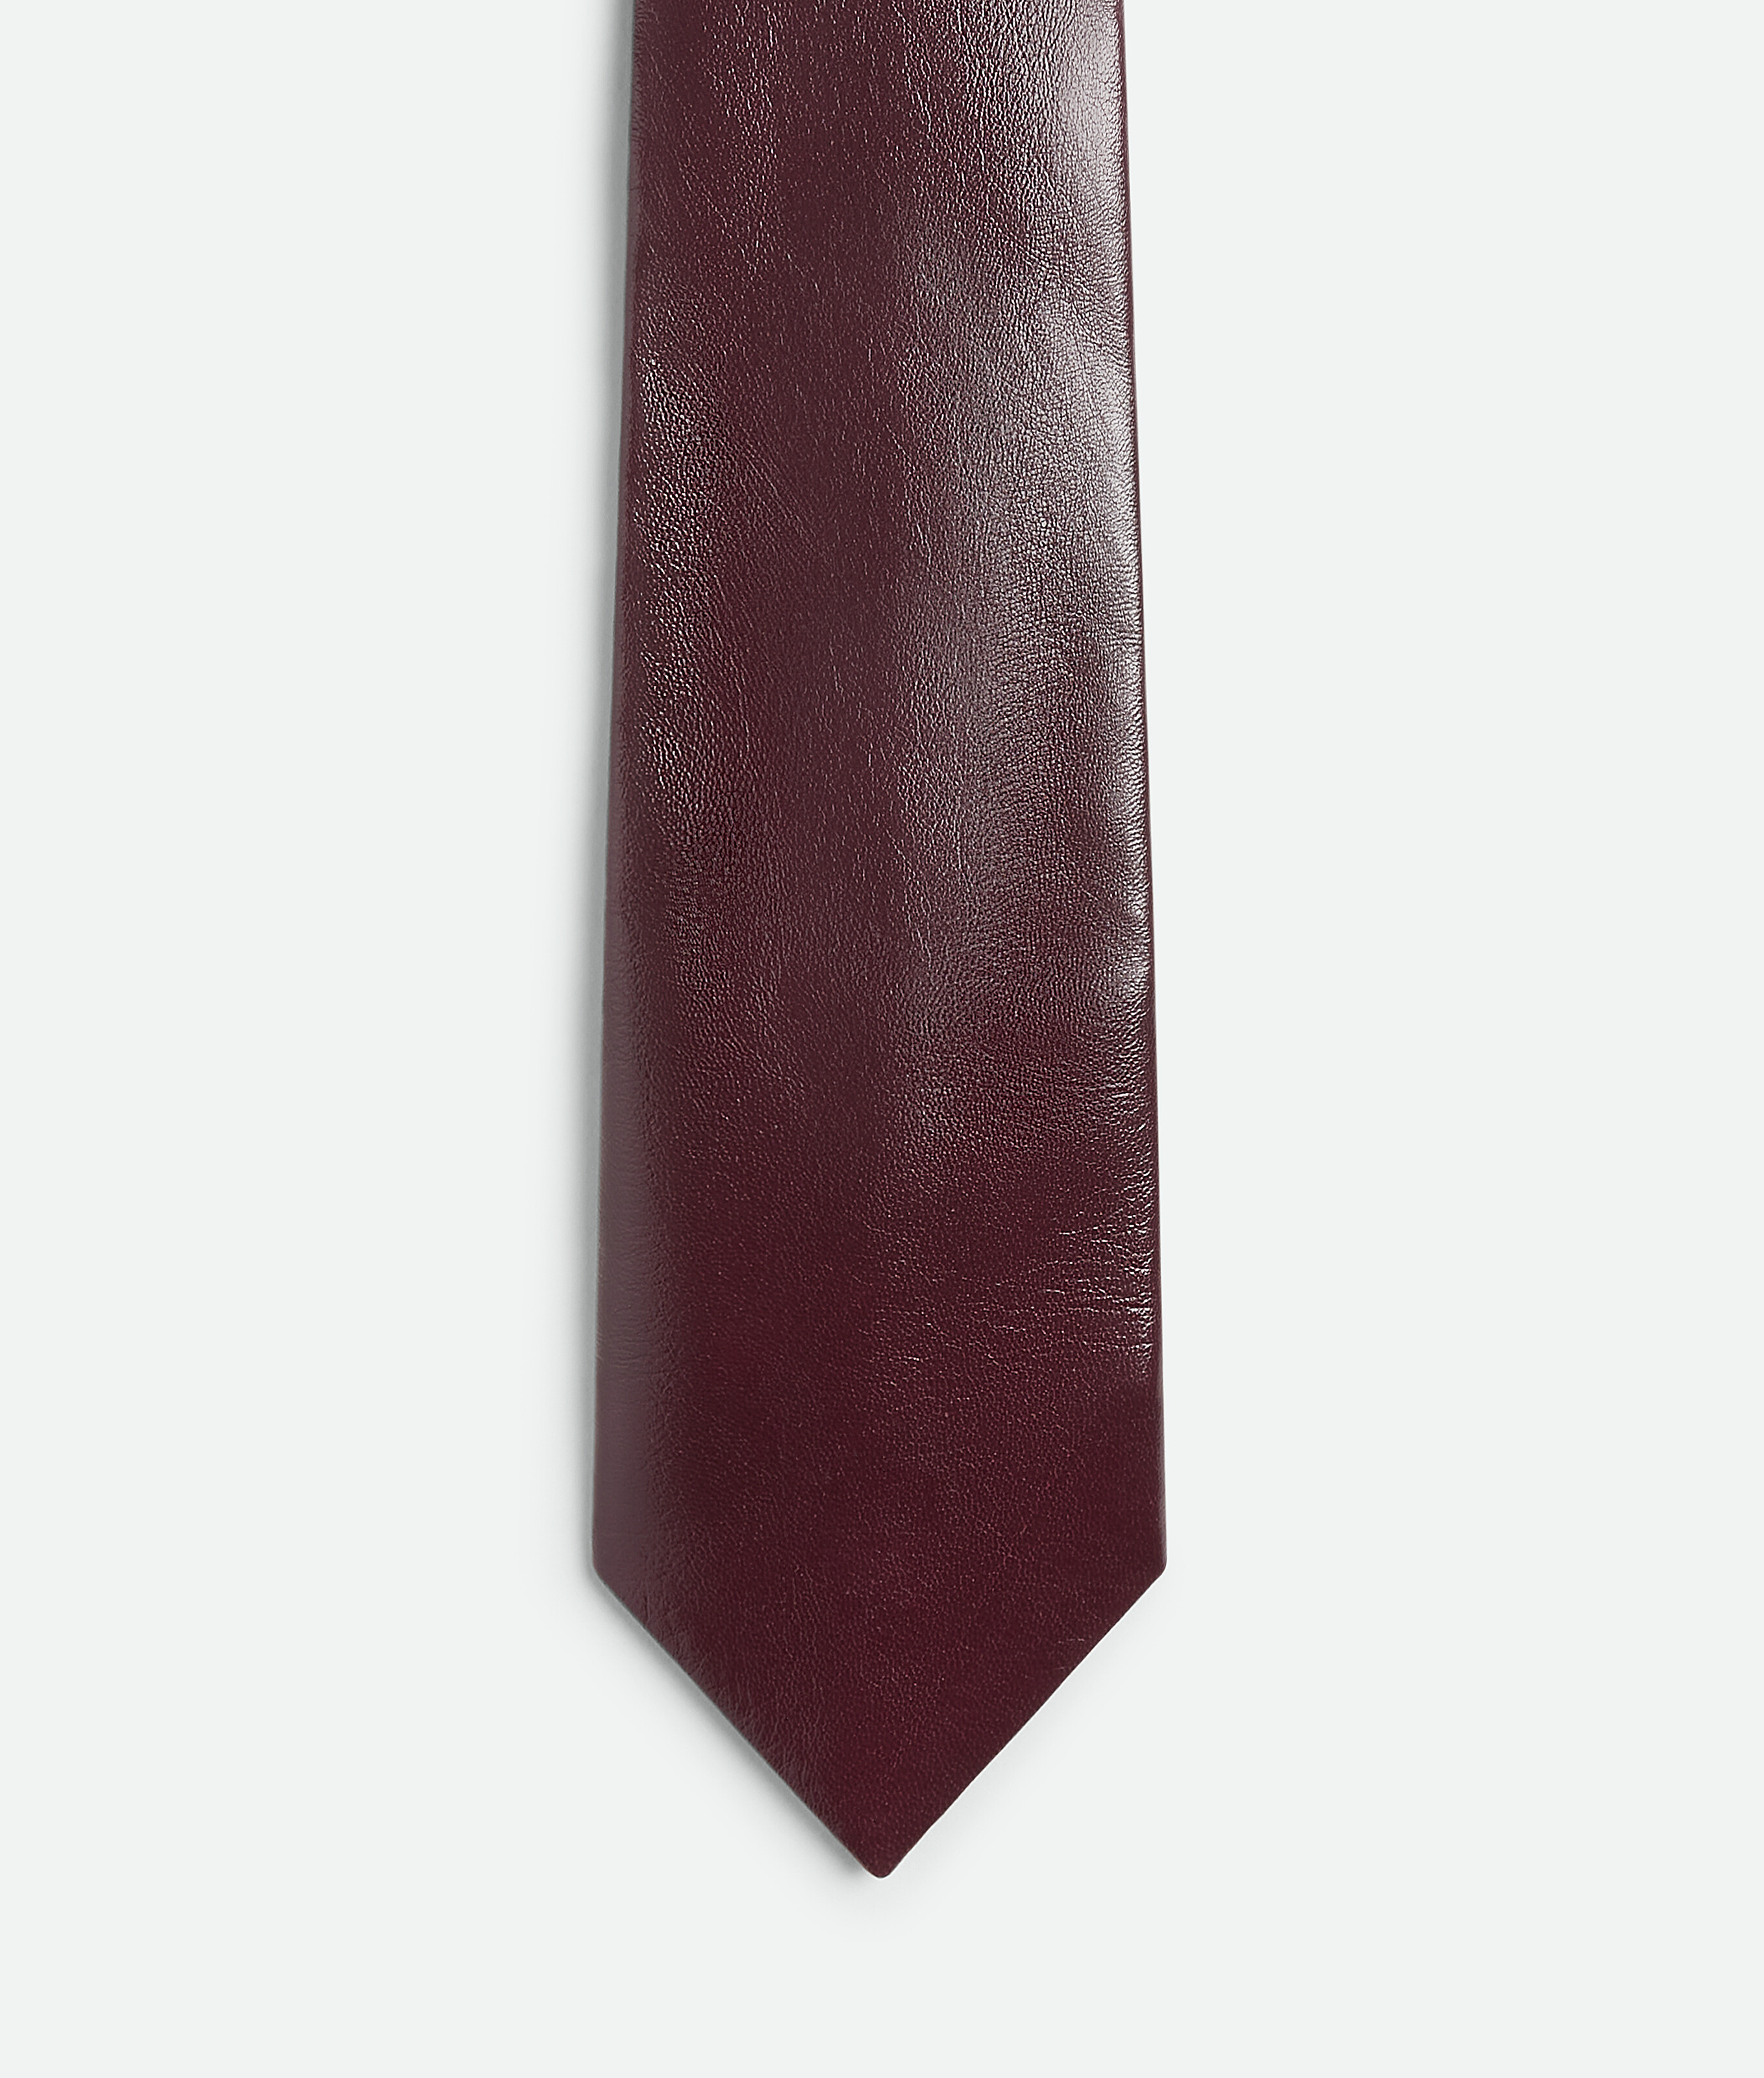 Bottega Veneta Shiny Leather Tie In Bordeaux